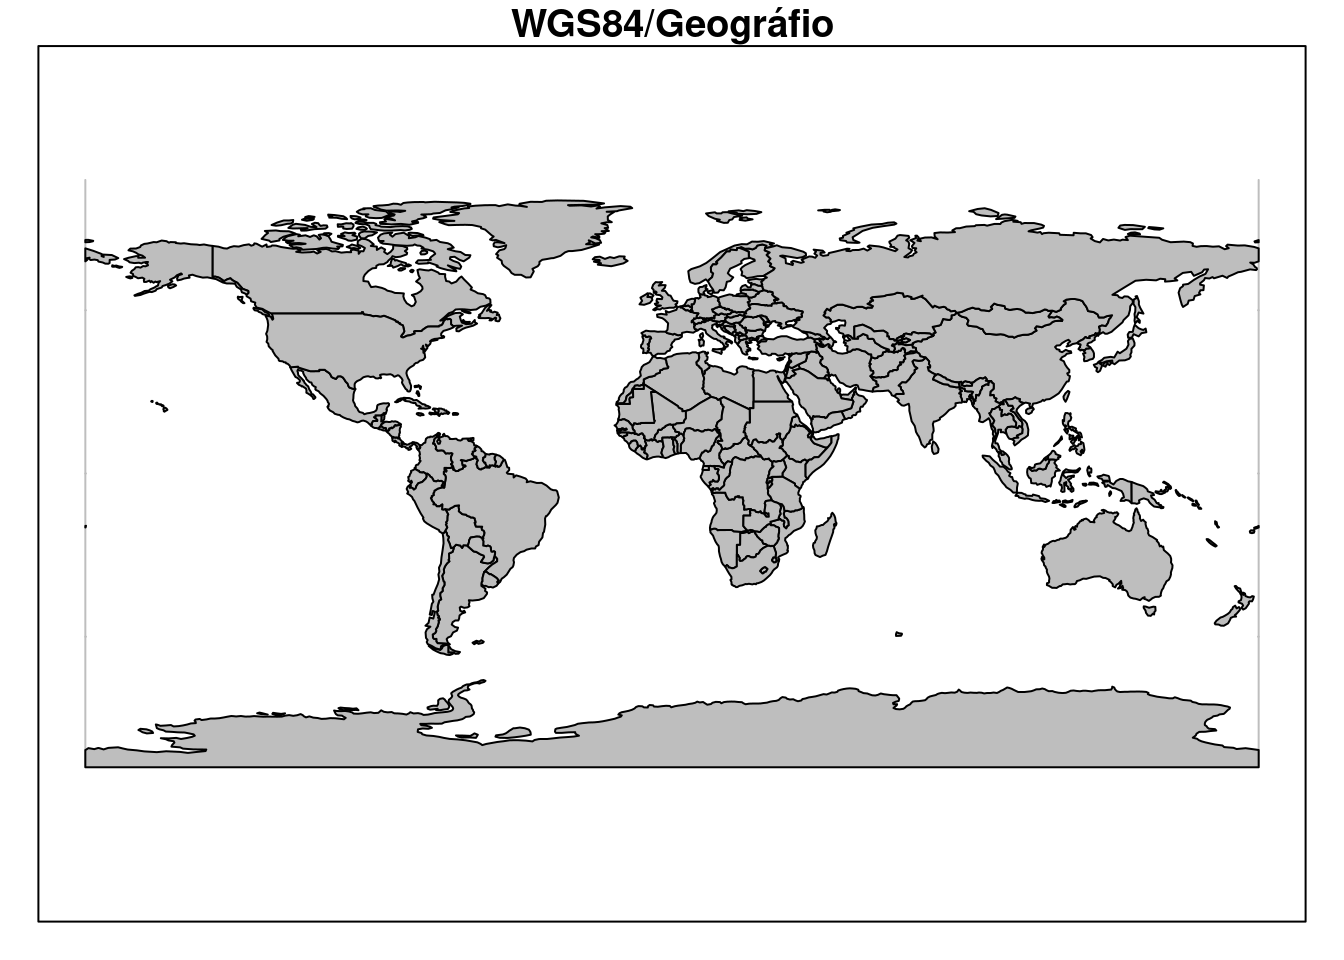 Limite dos países do mundo com CRS geográfico e datum WGS84.